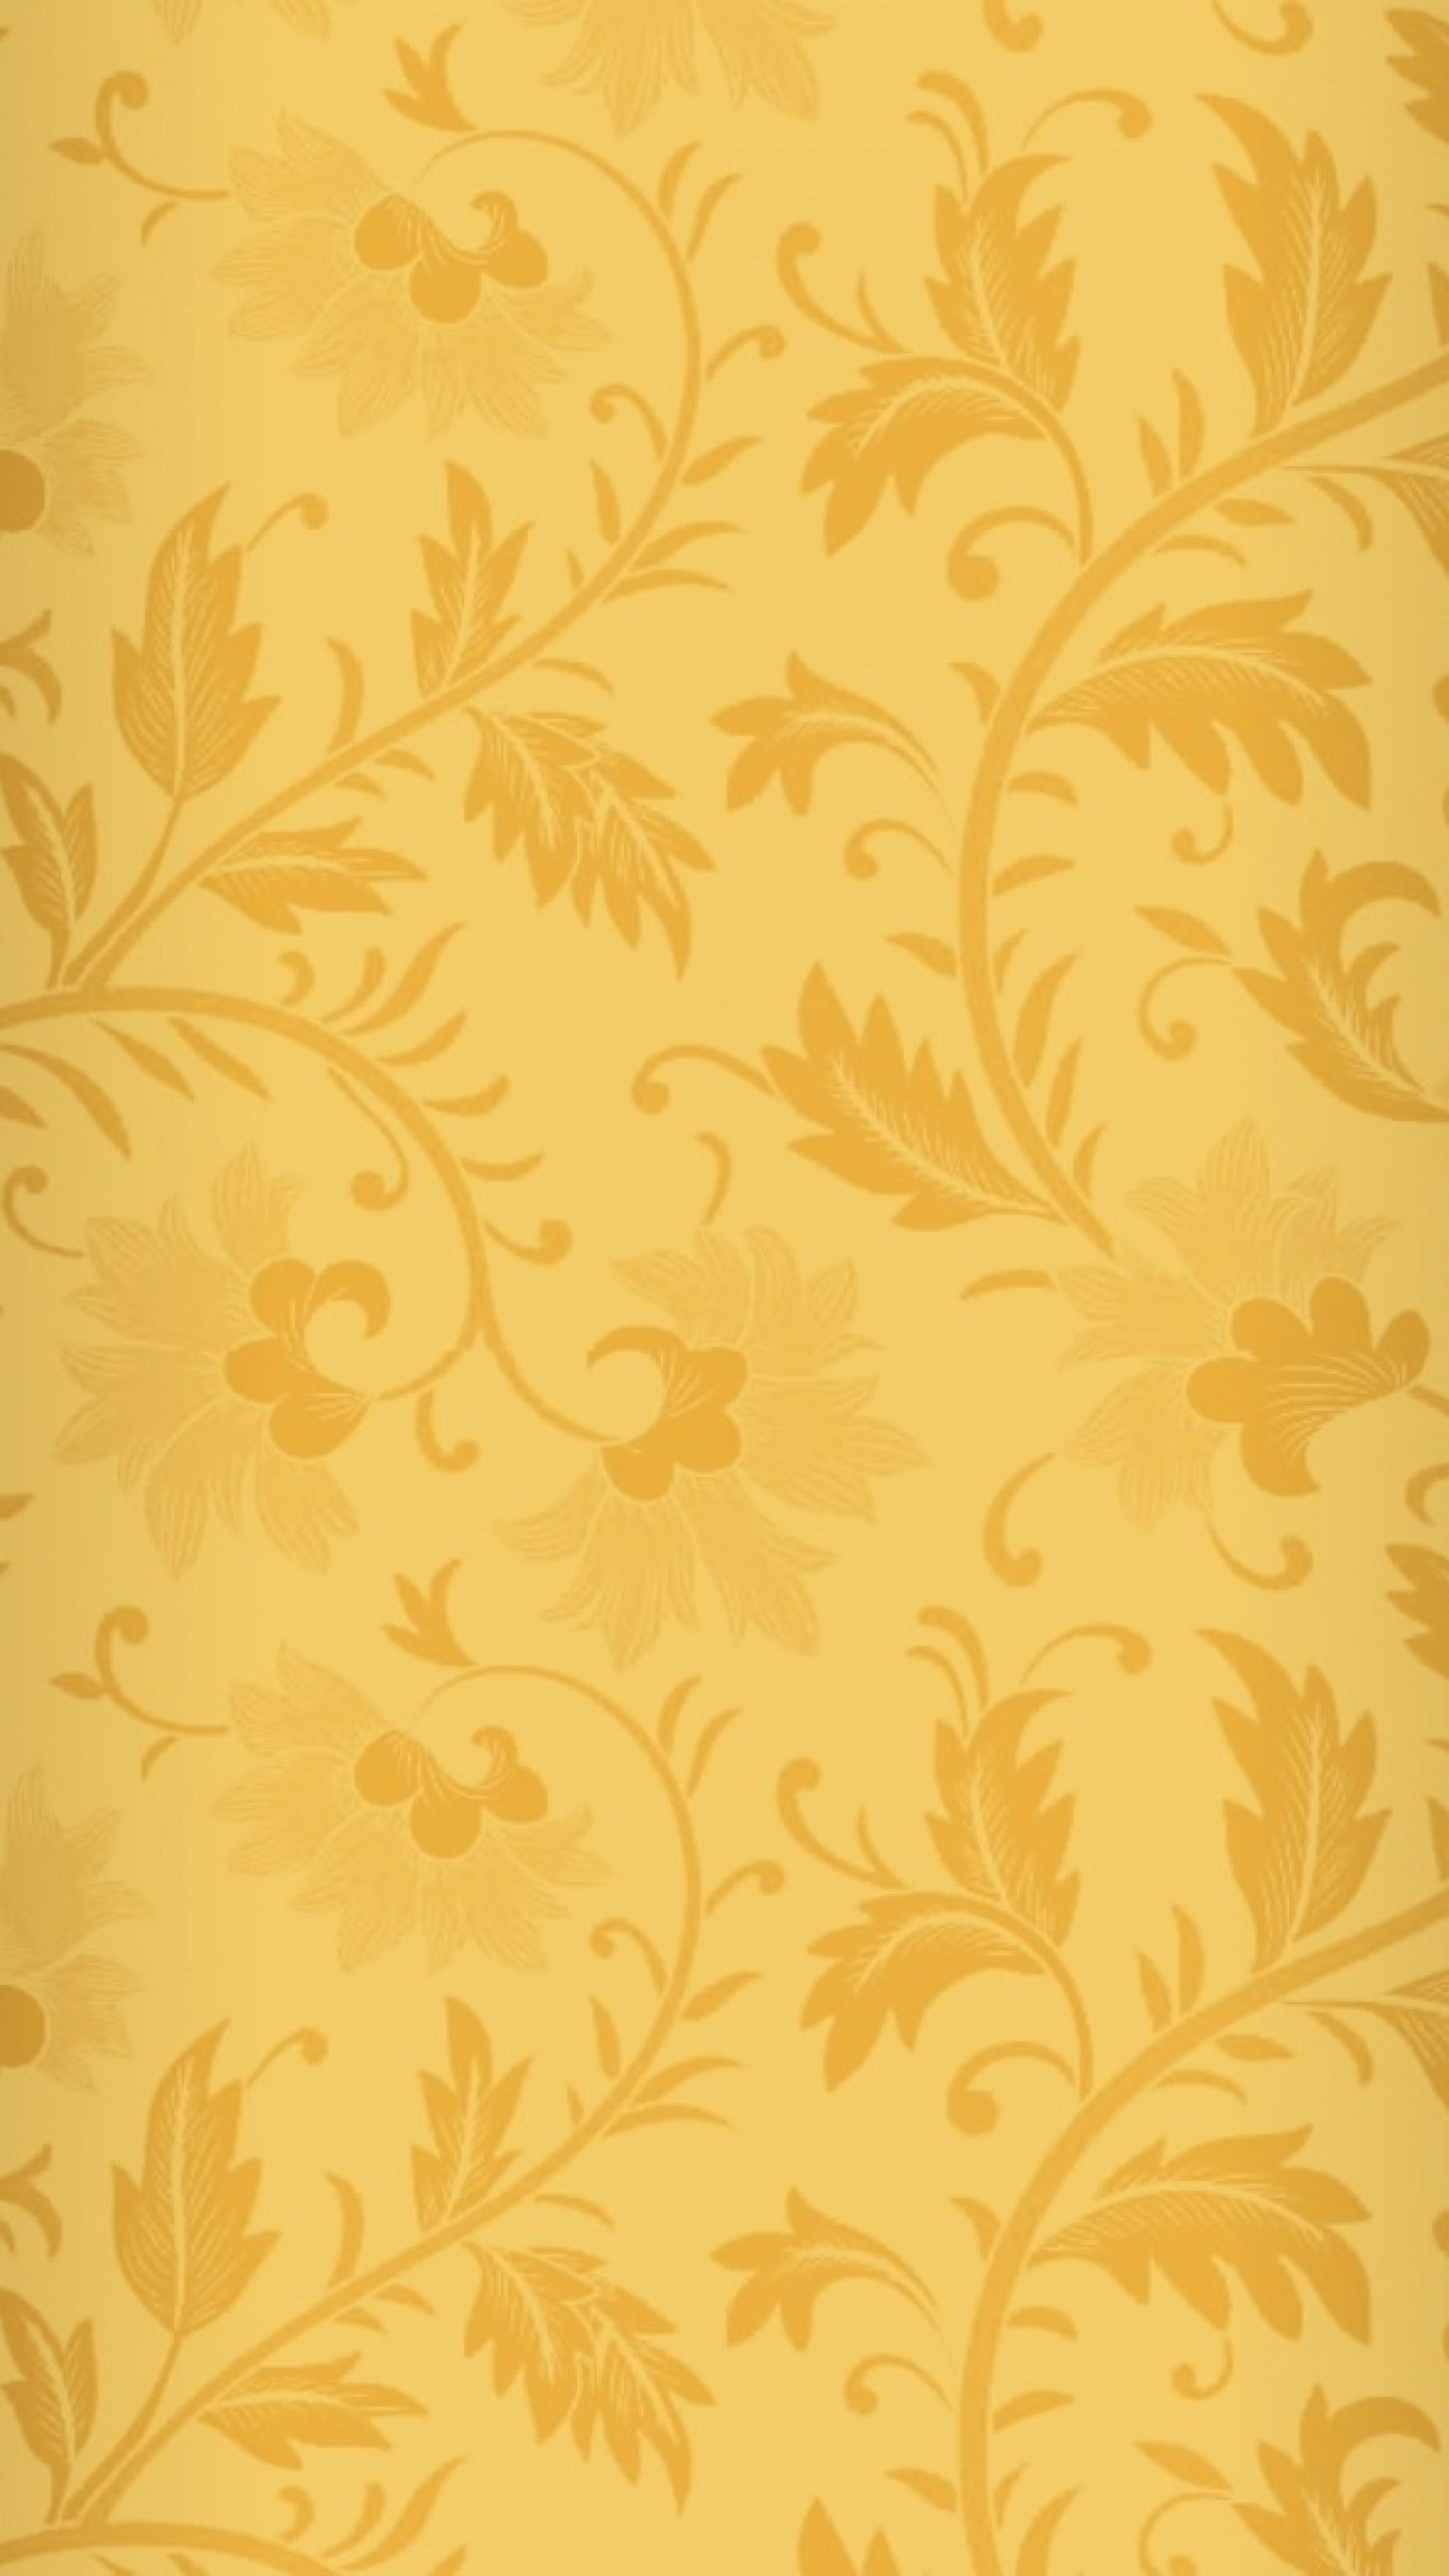 Wallpaper pattern, bronze, texture